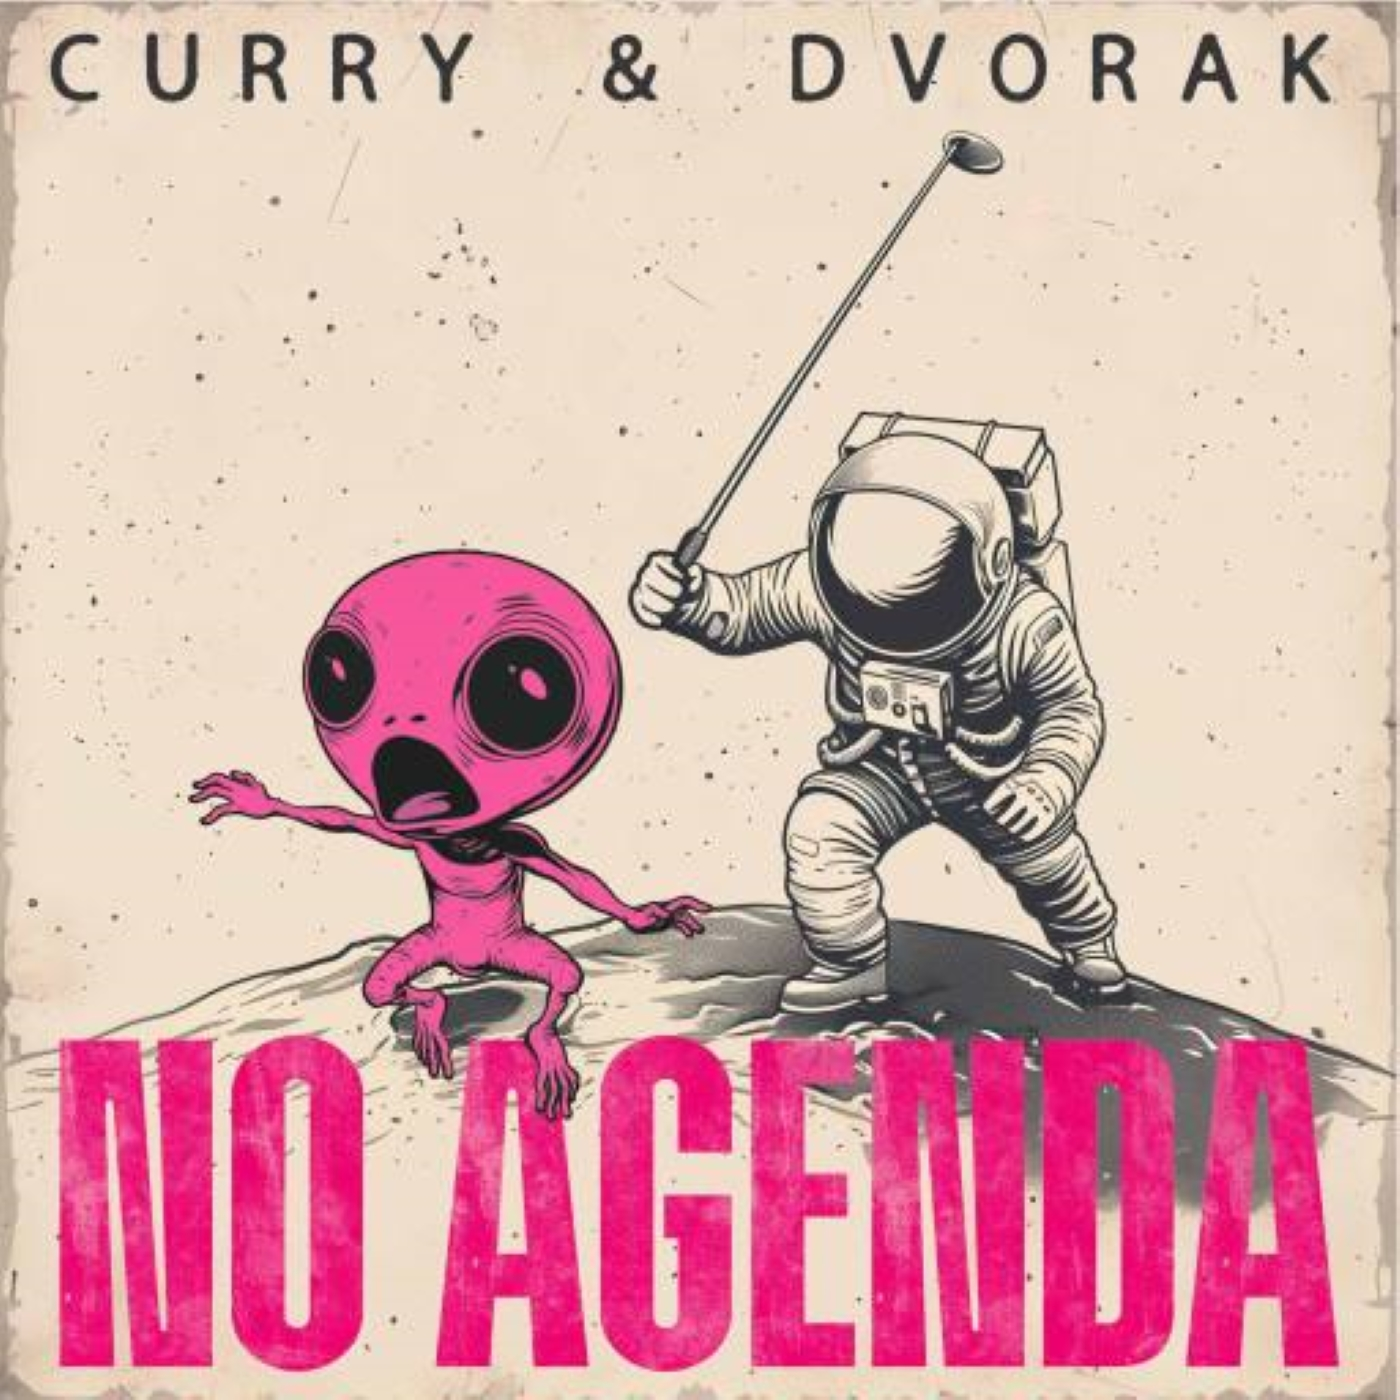 No Agenda